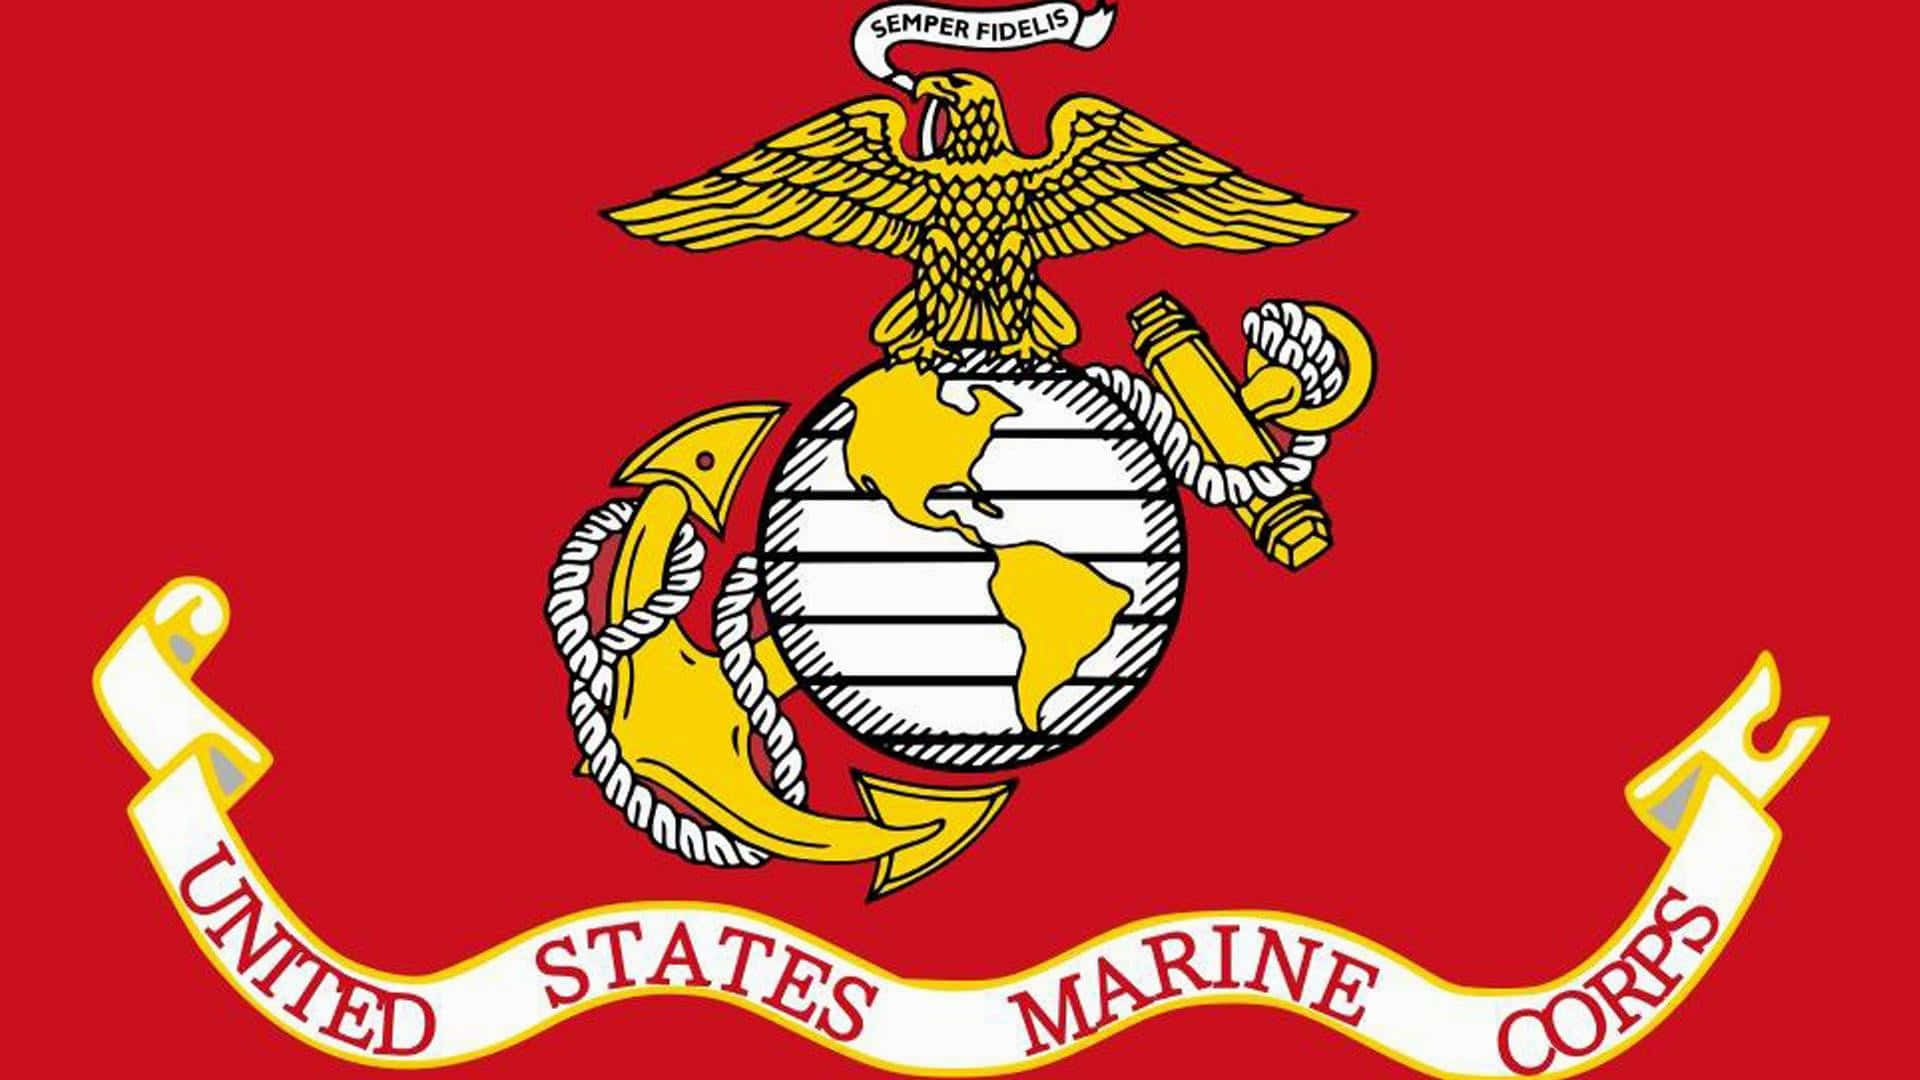 Logotipodel Cuerpo De Marines De Los Estados Unidos Fondo de pantalla